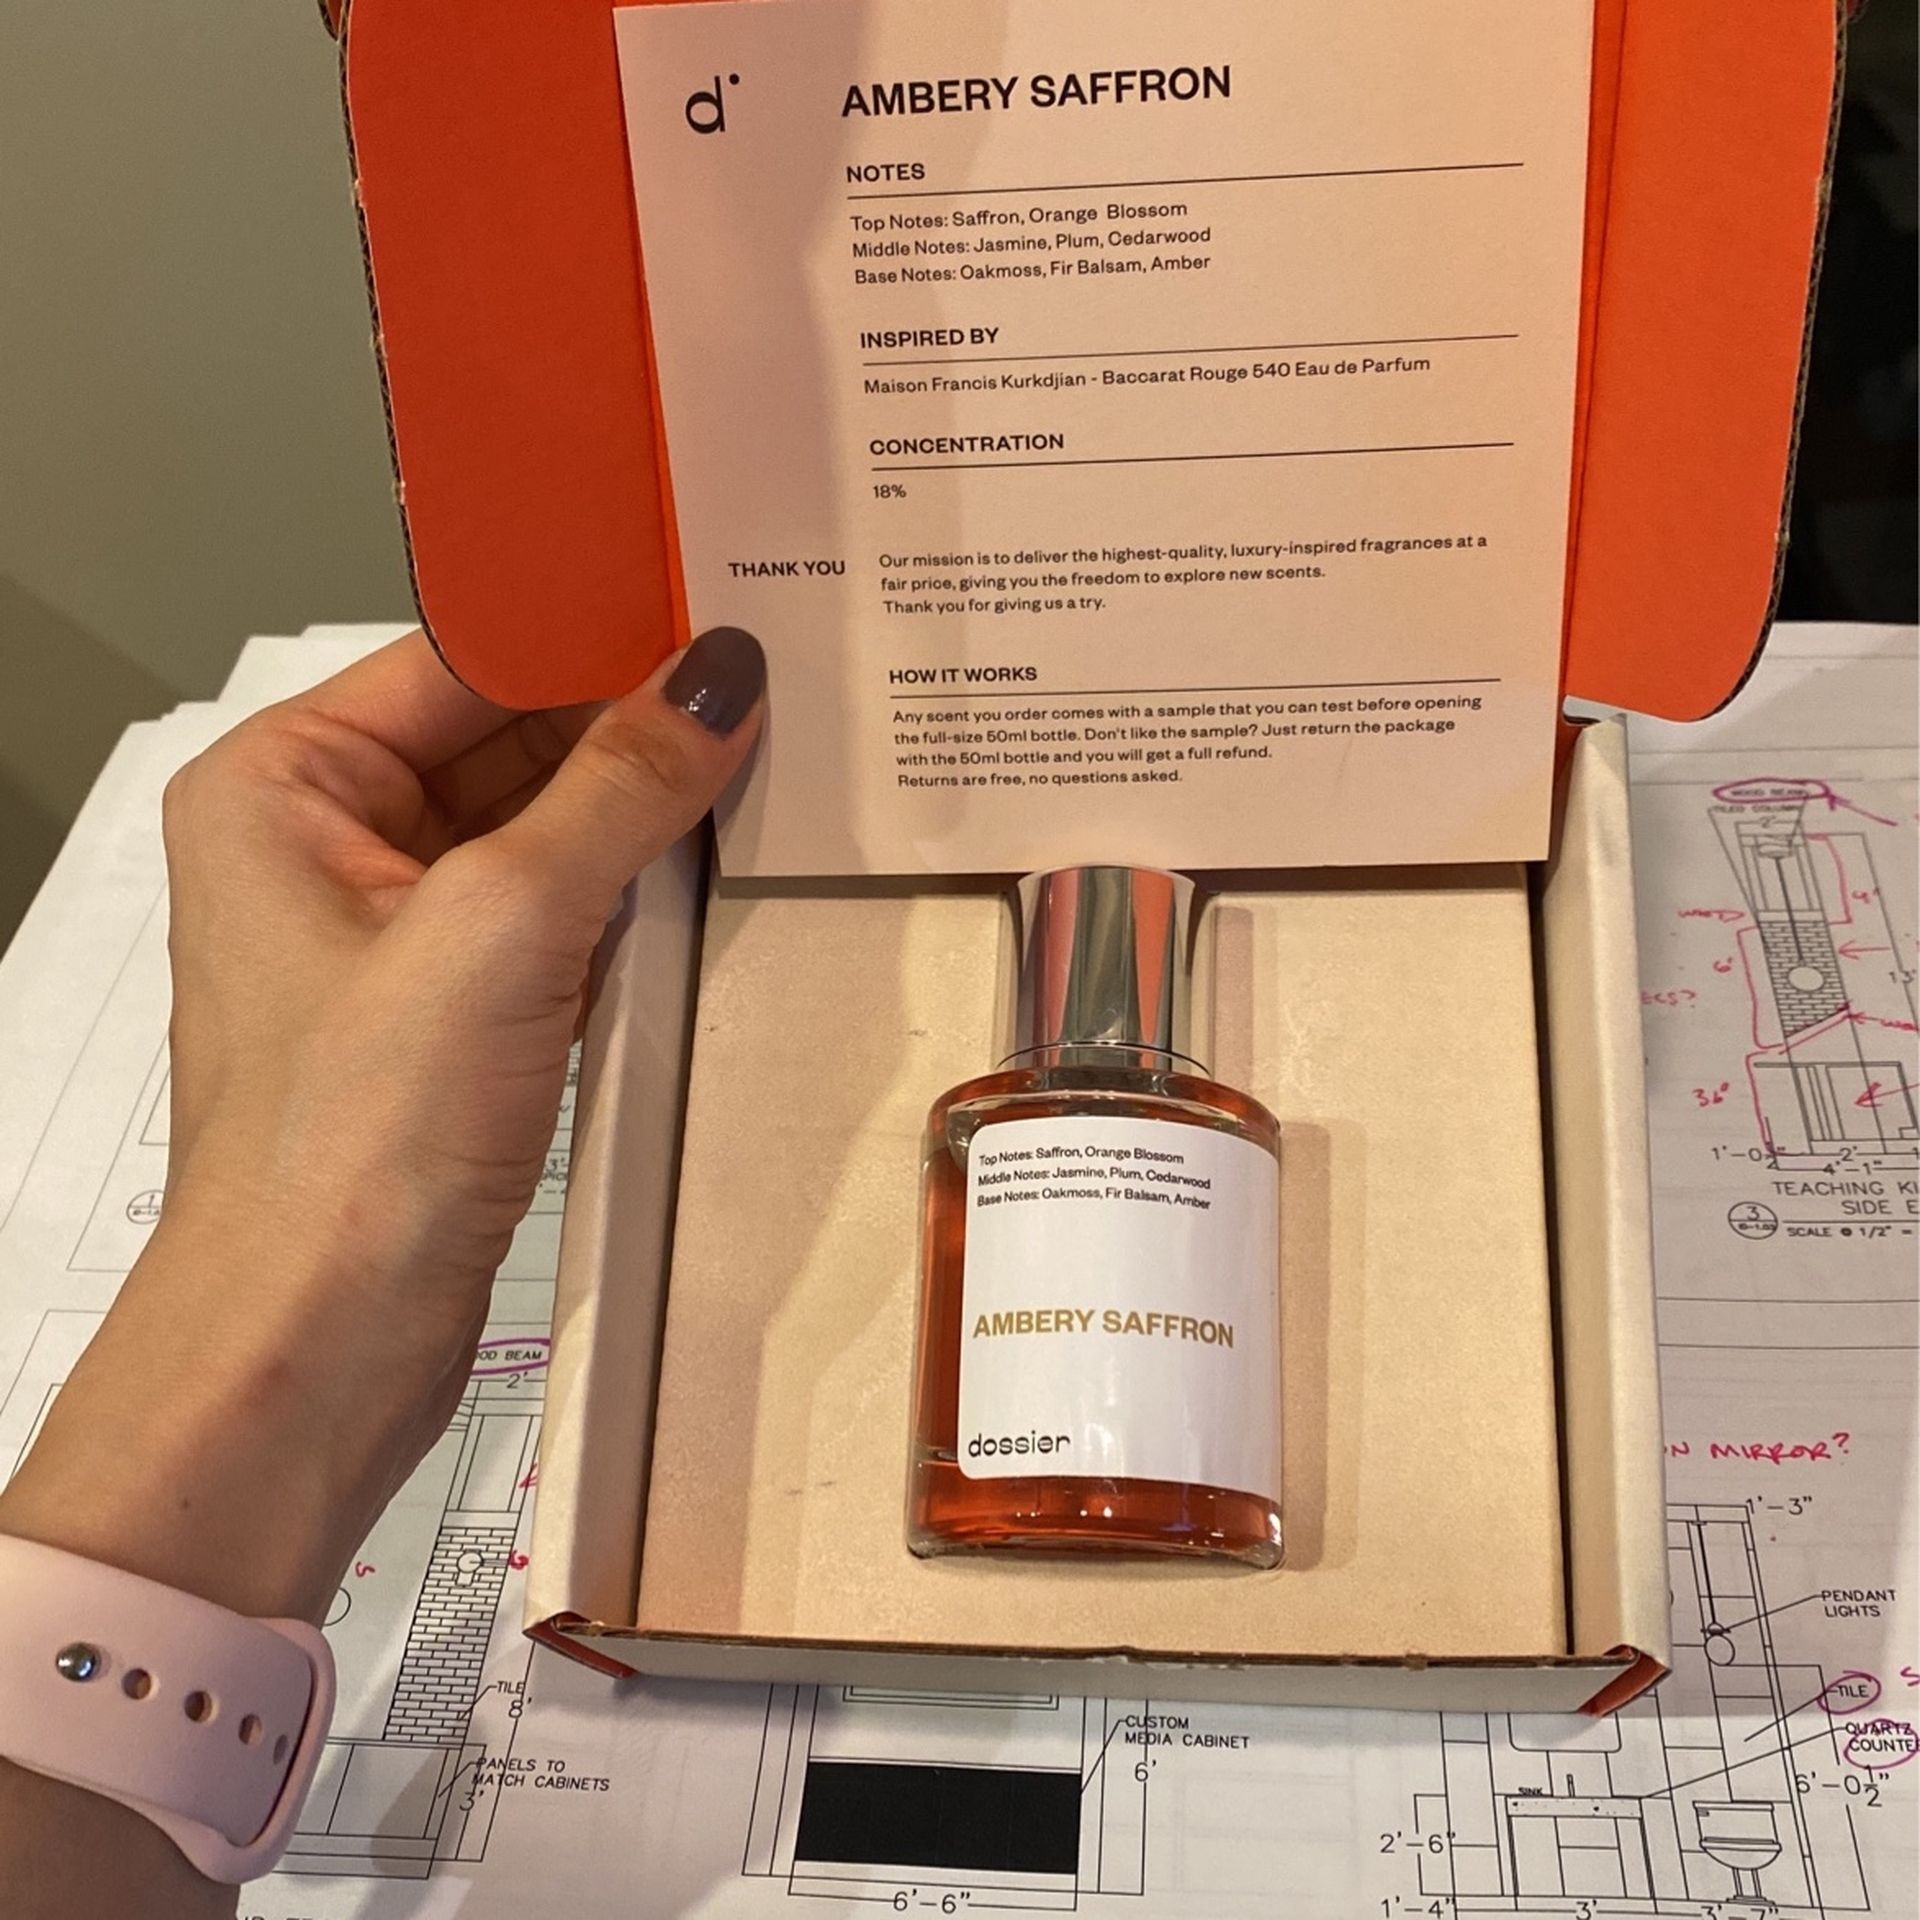 Baccarat Rouge 540 Eau De Parfum By Dossier, Amber’s Saffron Brand New 50 ml Bottle 18% Concentration